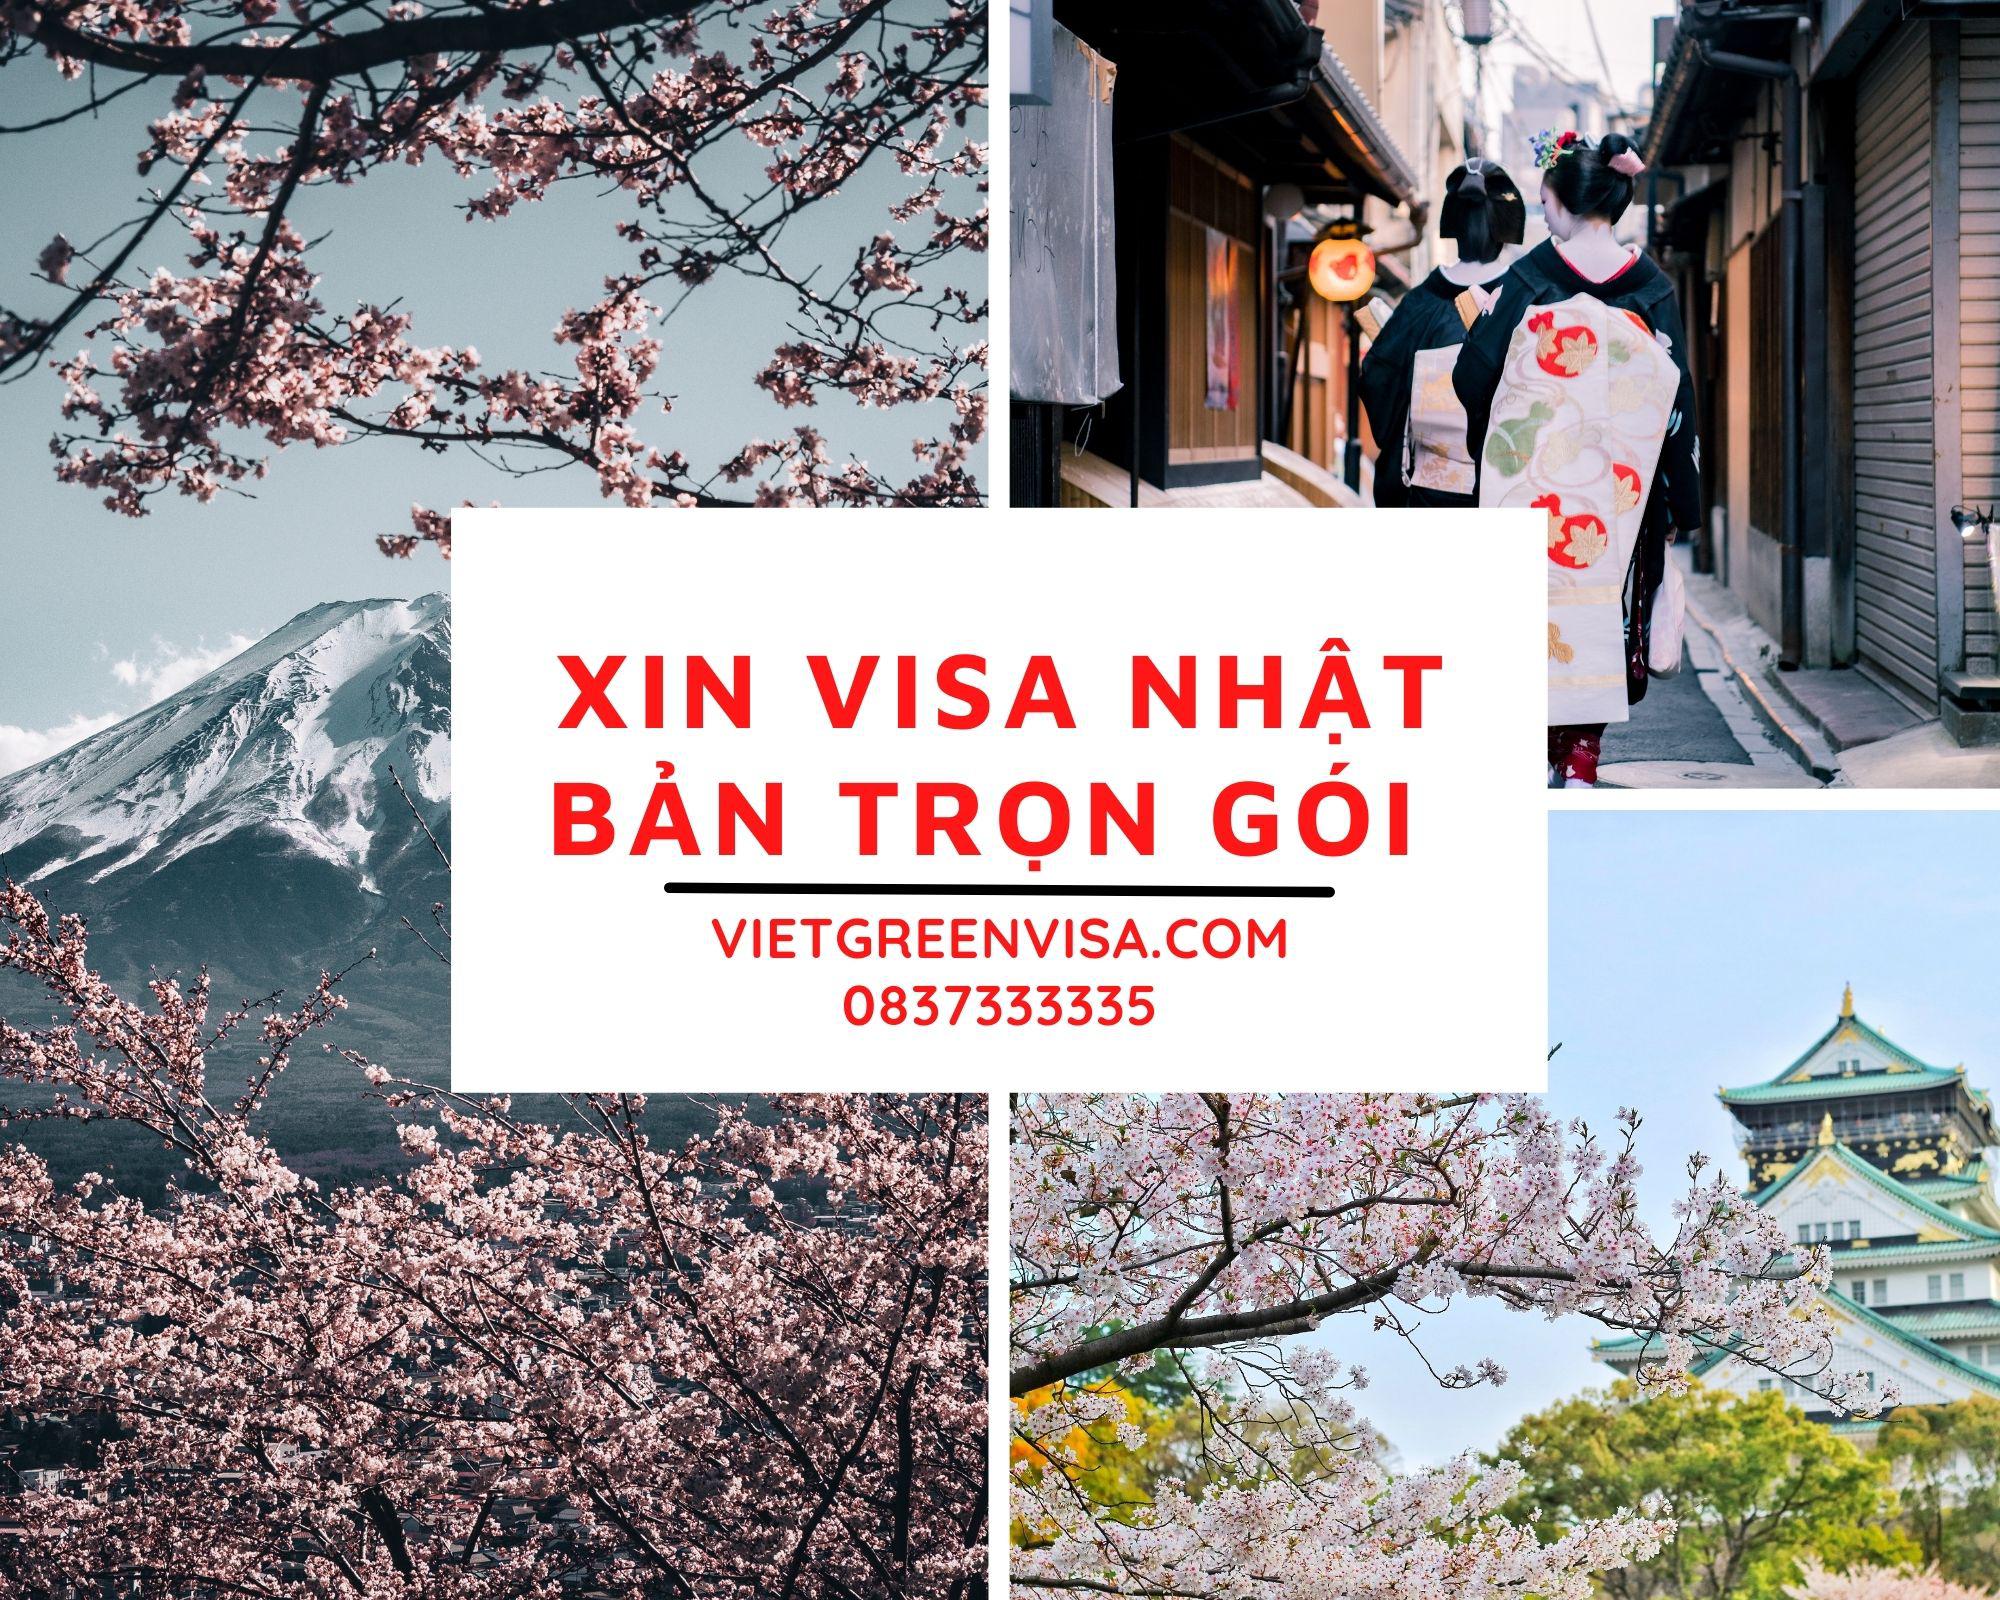 Xin Visa Nhật Bản trọn gói tại Hà Nội, Hồ Chí Minh